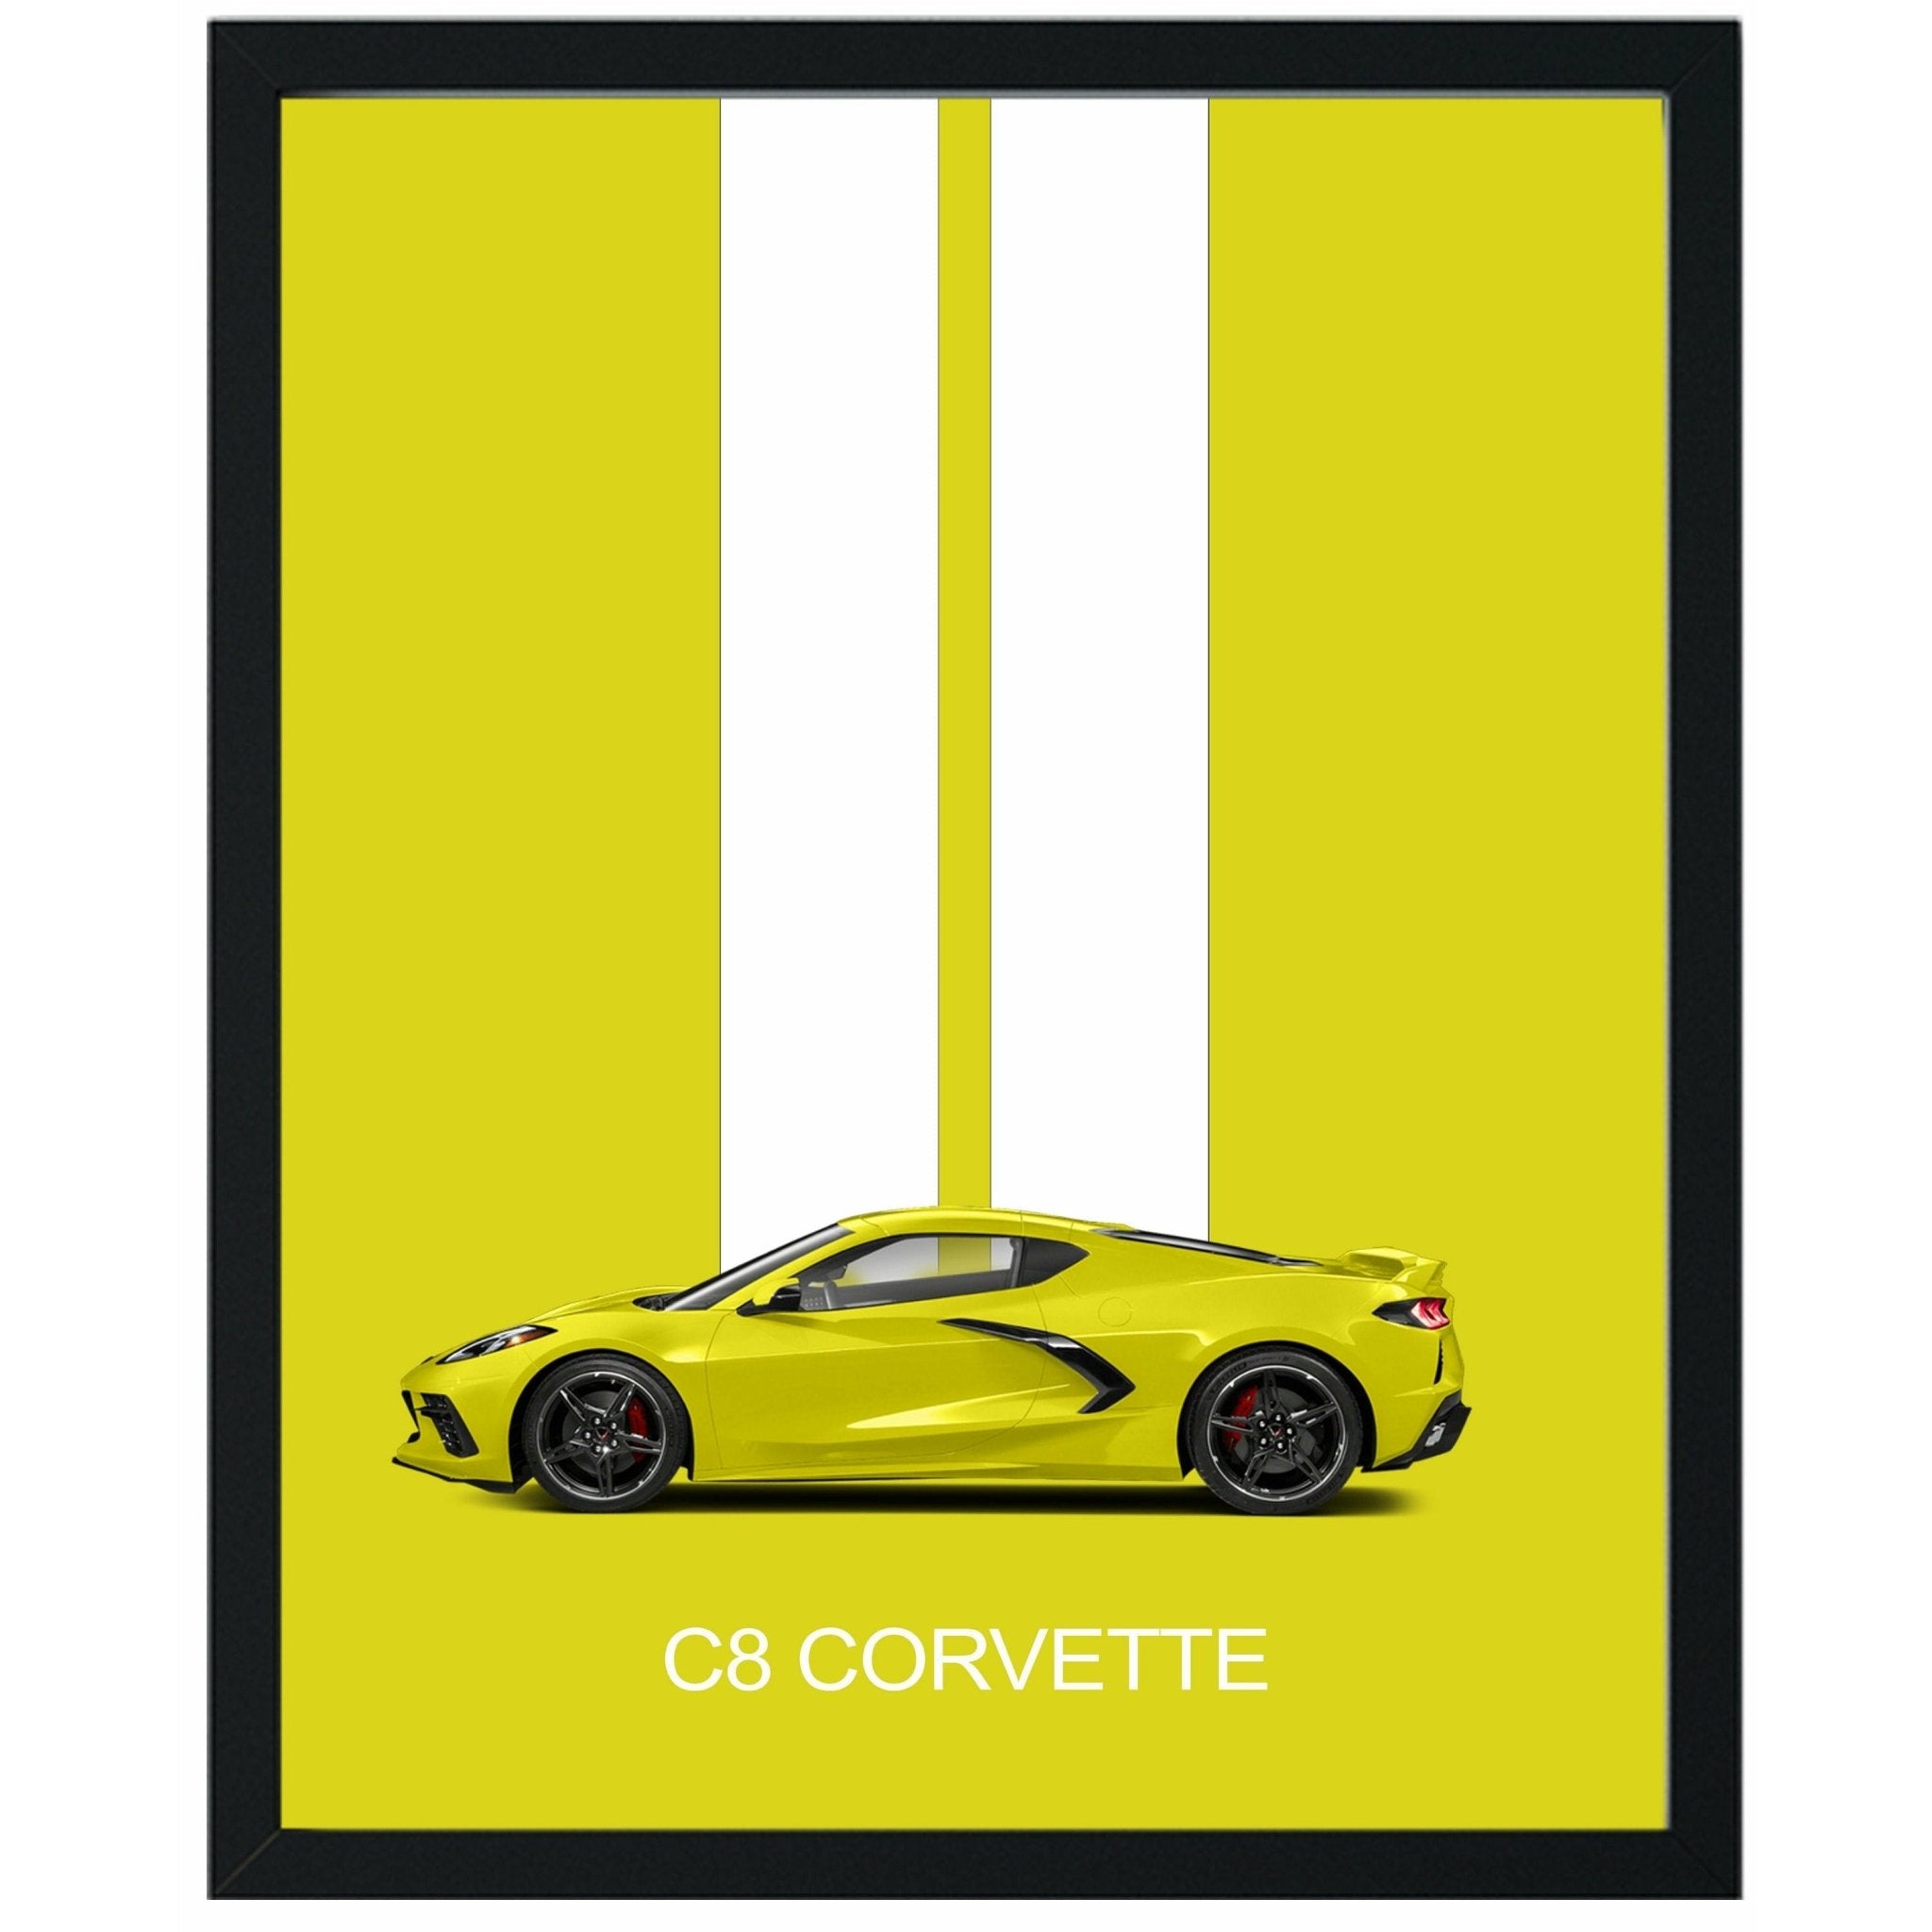 Corvette C8 Poster Print - Unframed | Corvette Wall Art | Great Gift for Dad or Corvette Enthusiast - Vette1 - Wall Art